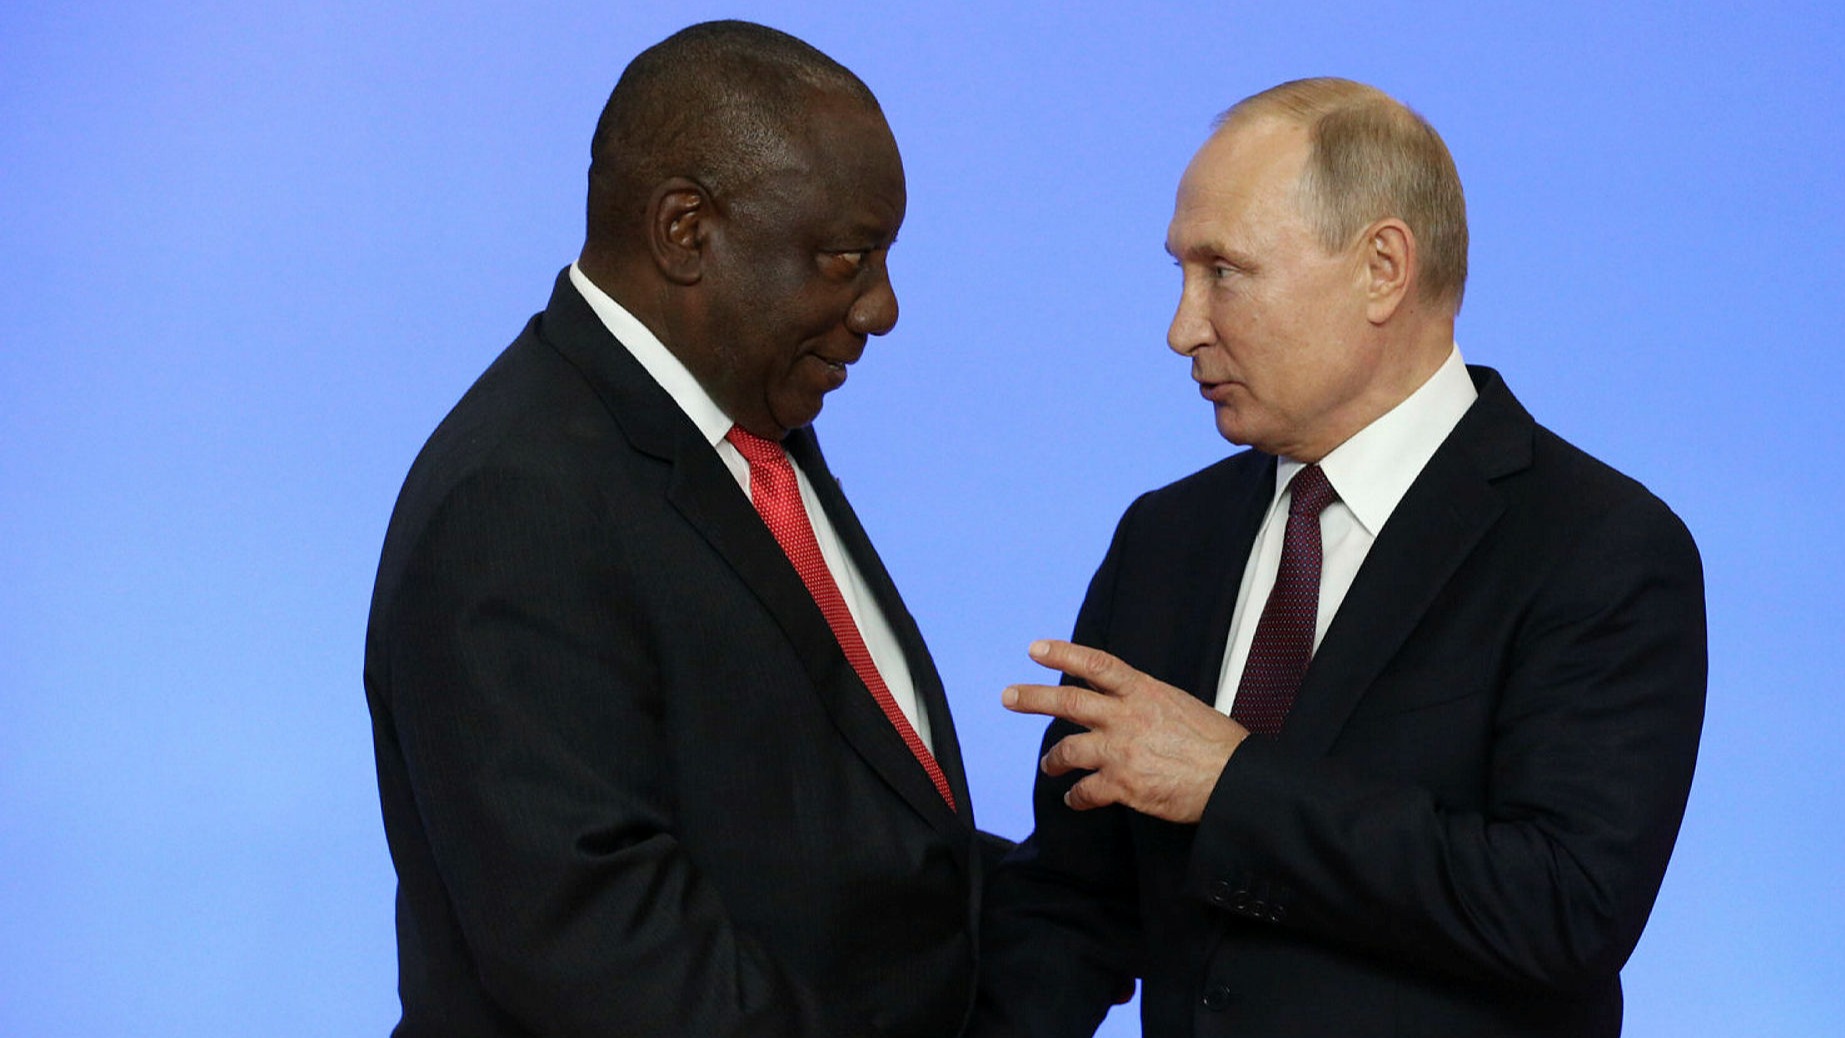 Le mandat d'arrêt contre Poutine nous met "des bâtons dans les roues", dit Pretoria